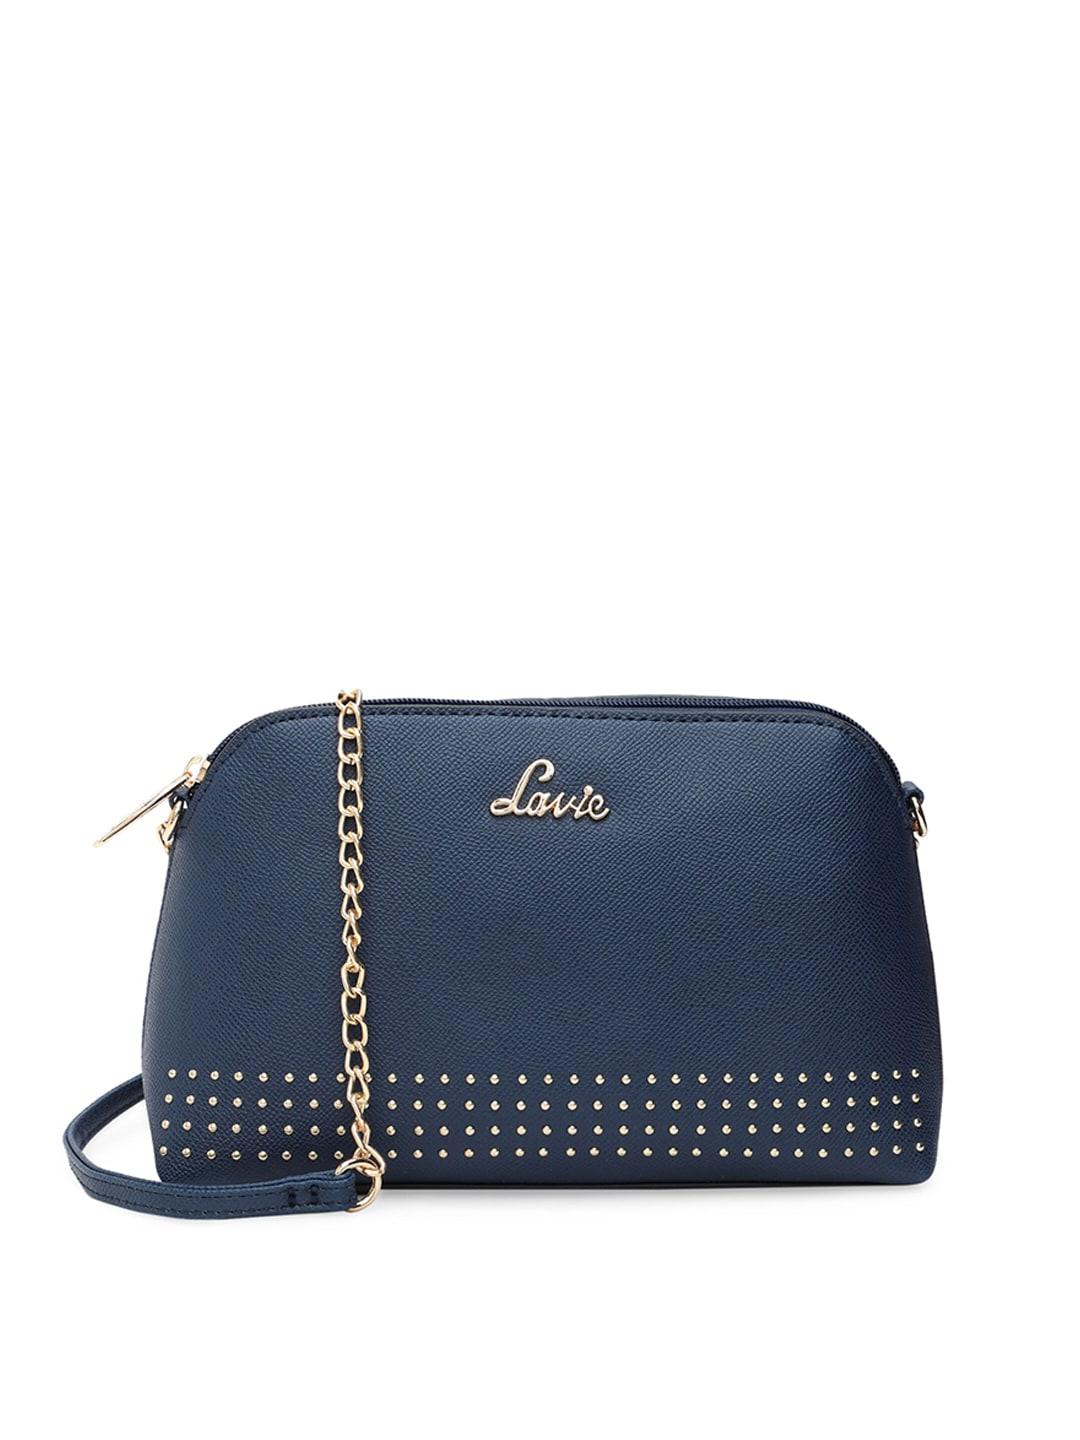 lavie-navy-blue-structured-sling-bag